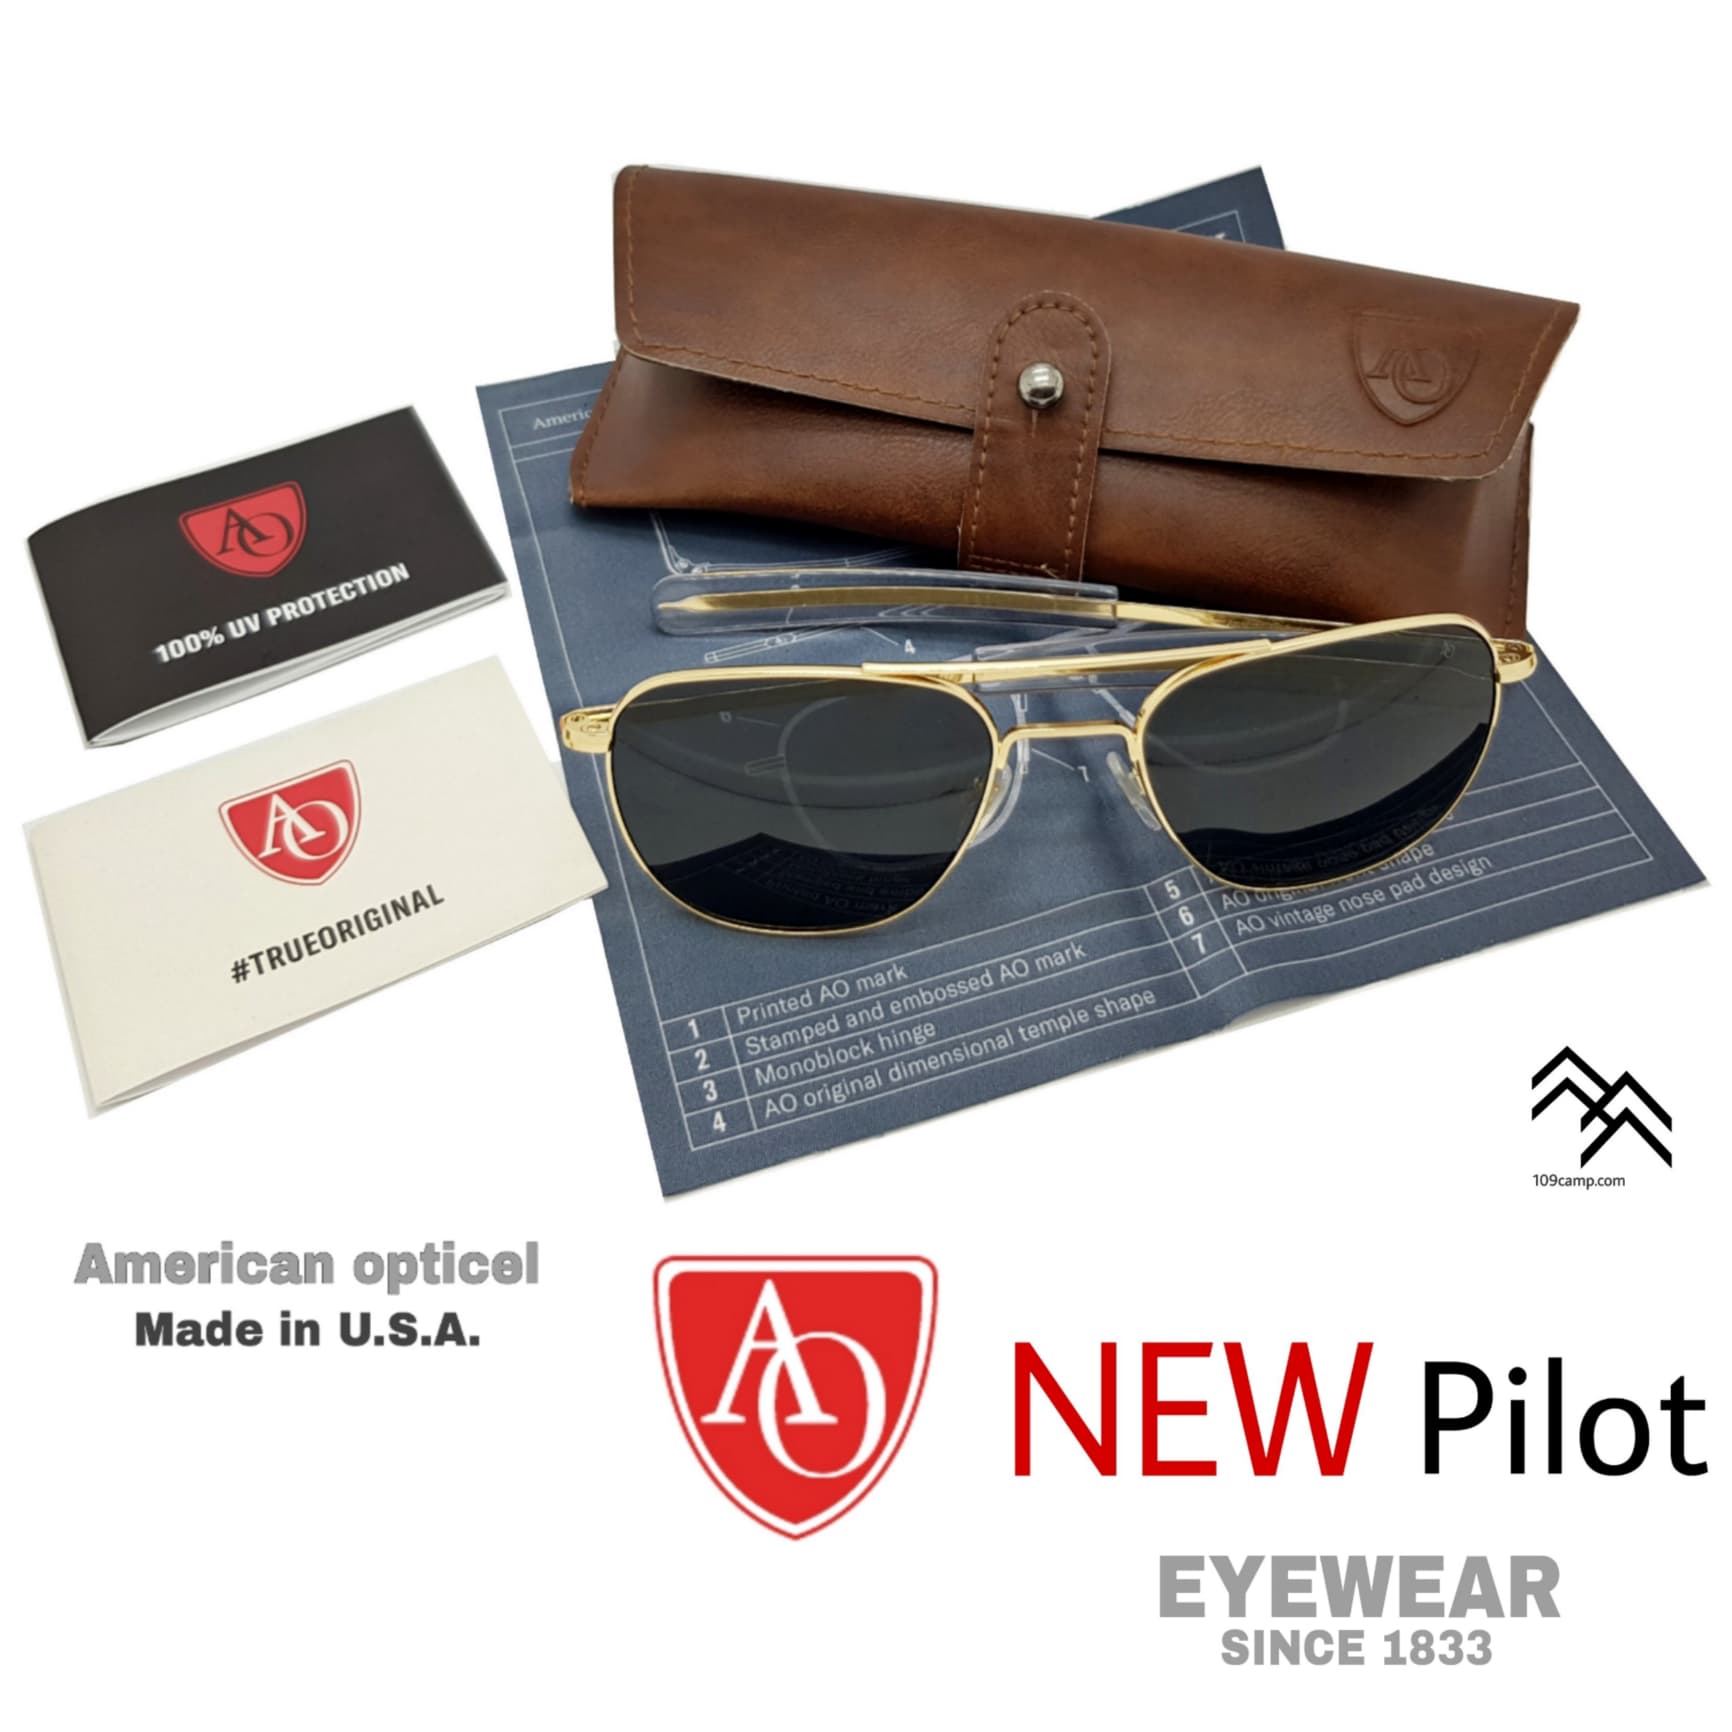 แว่นตา AO Eyewear รุ่นปรับปรุงใหม่2021 รุ่น Pilot ของแท้แว่นตาที่นักบินทั่วโลกนิยมใช้มากที่สุด ผลิต USA.ทางร้านเป็นตัวแทนจำหน่ายอย่างเป็นทา